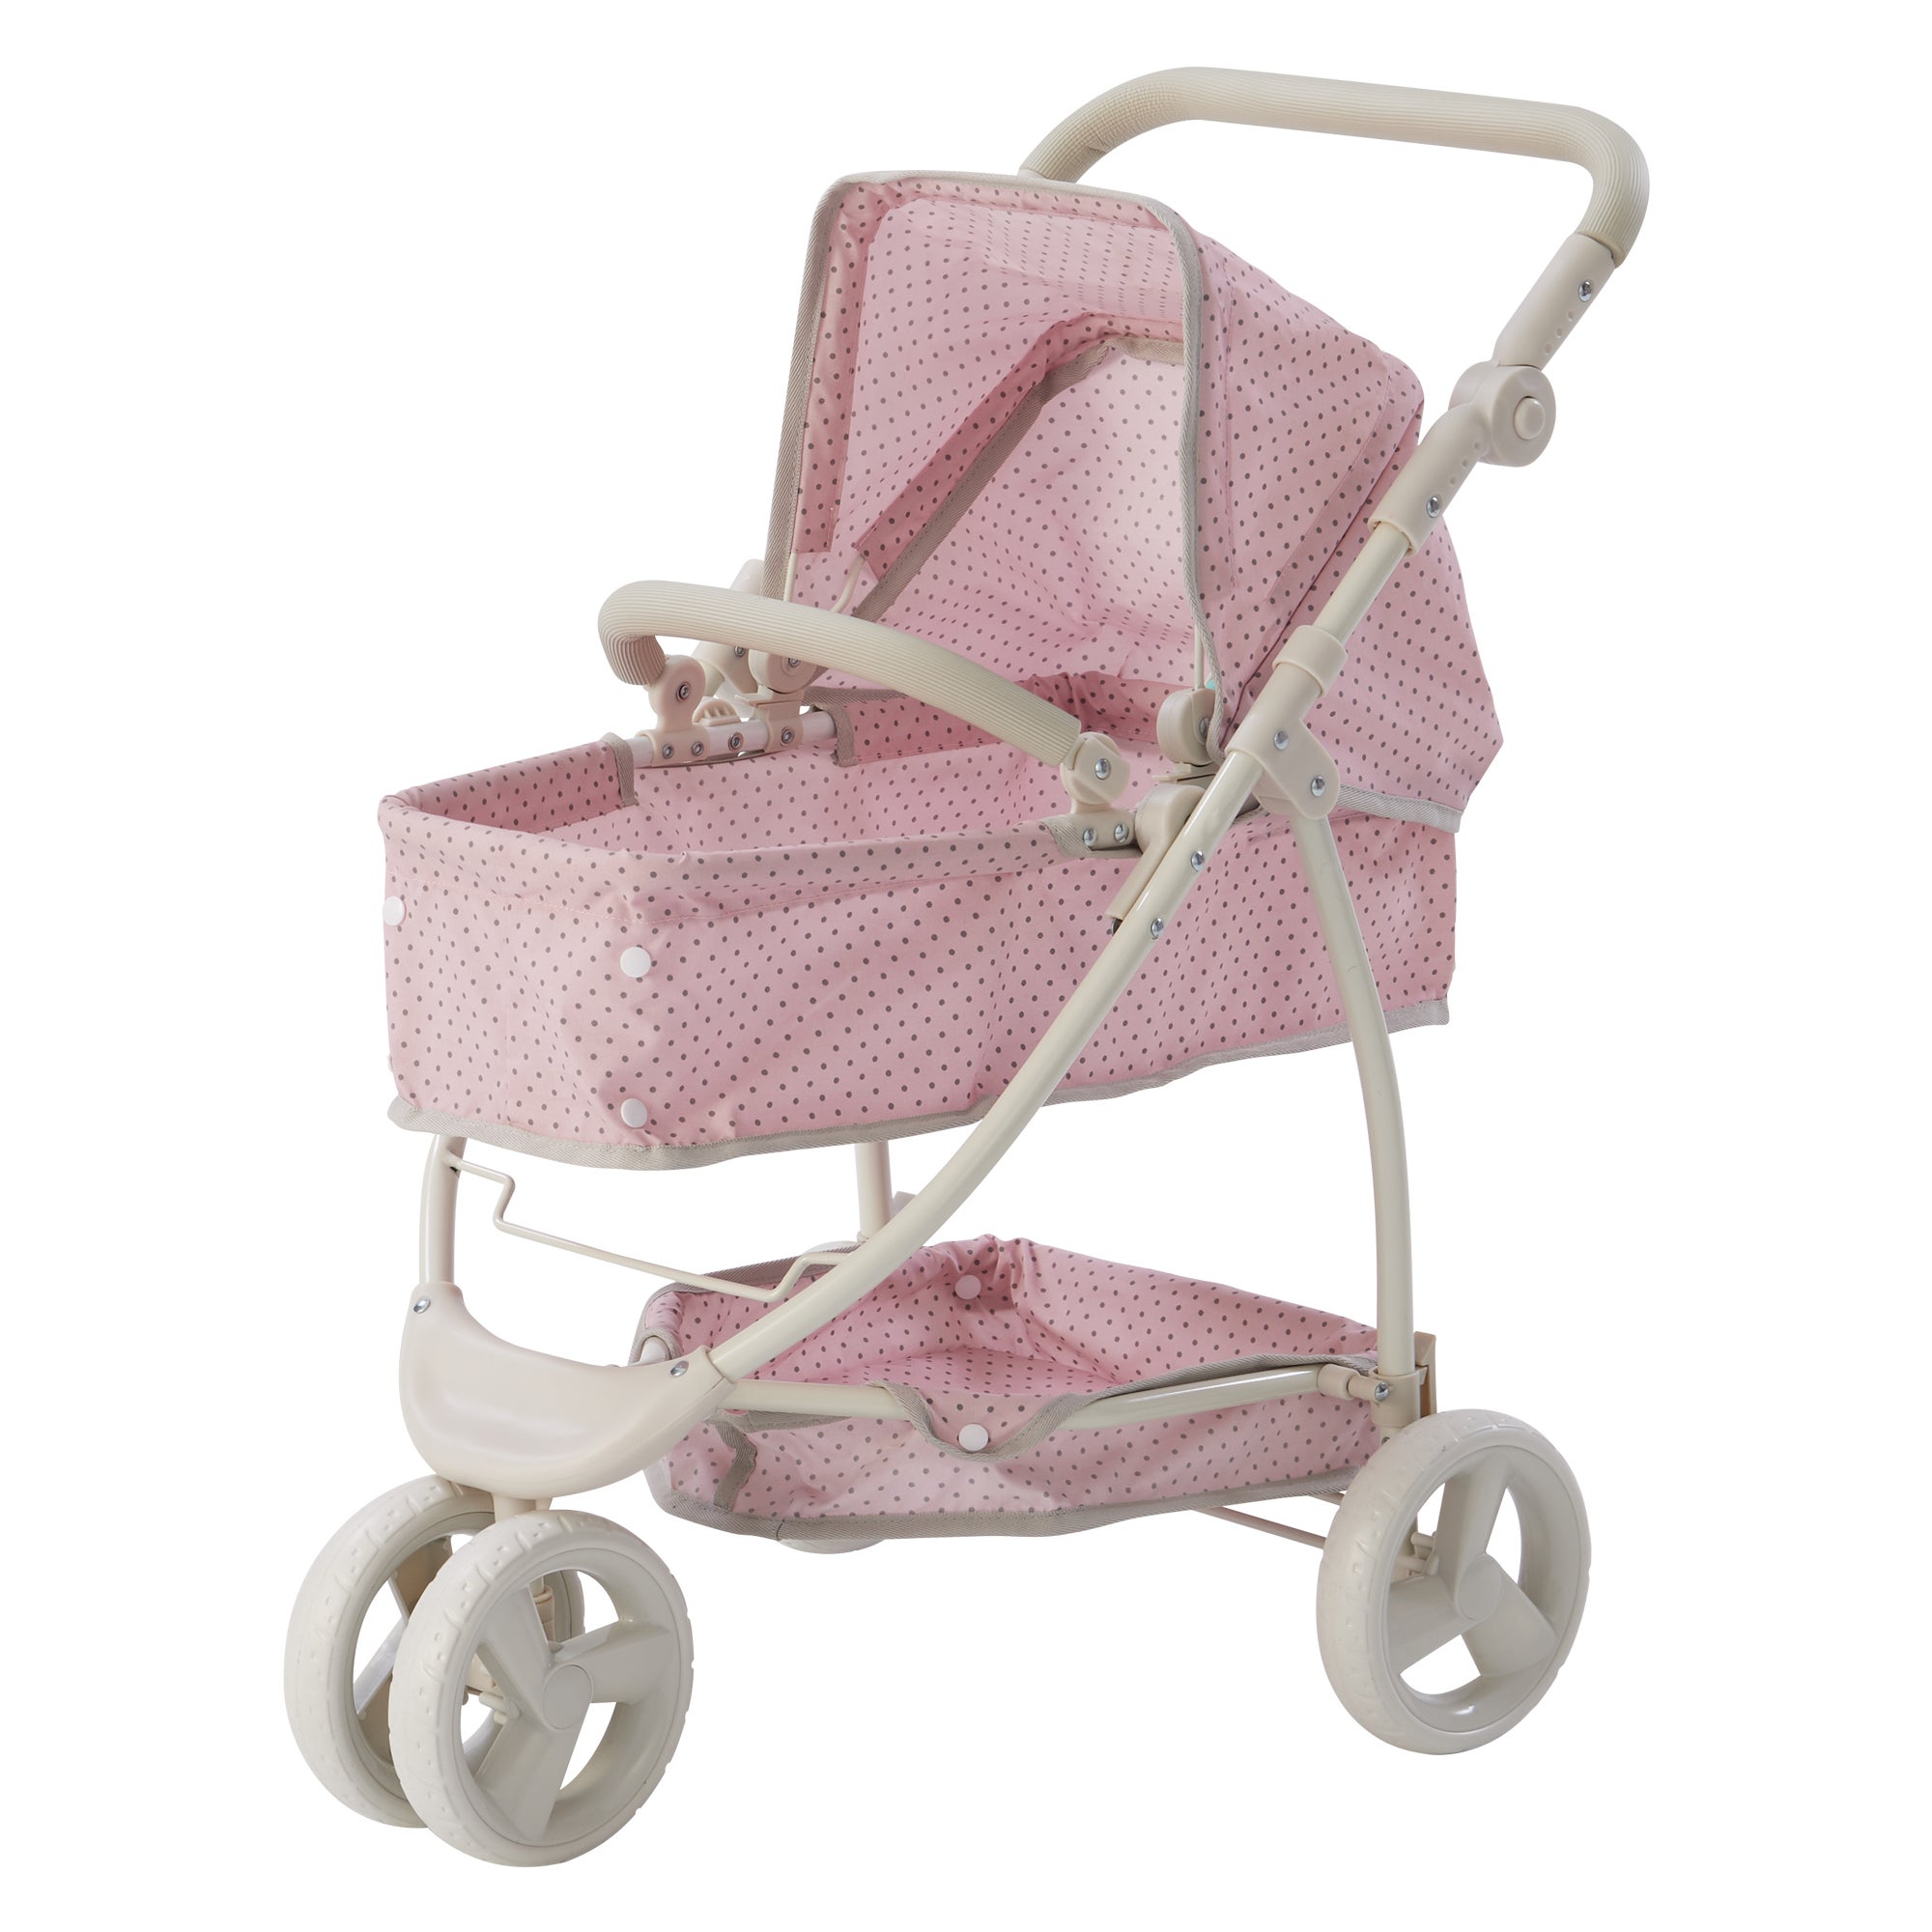 Teamson Kids 2 in 1 Baby Doll Stroller Pram Foldable Pink/Grey OL-00009